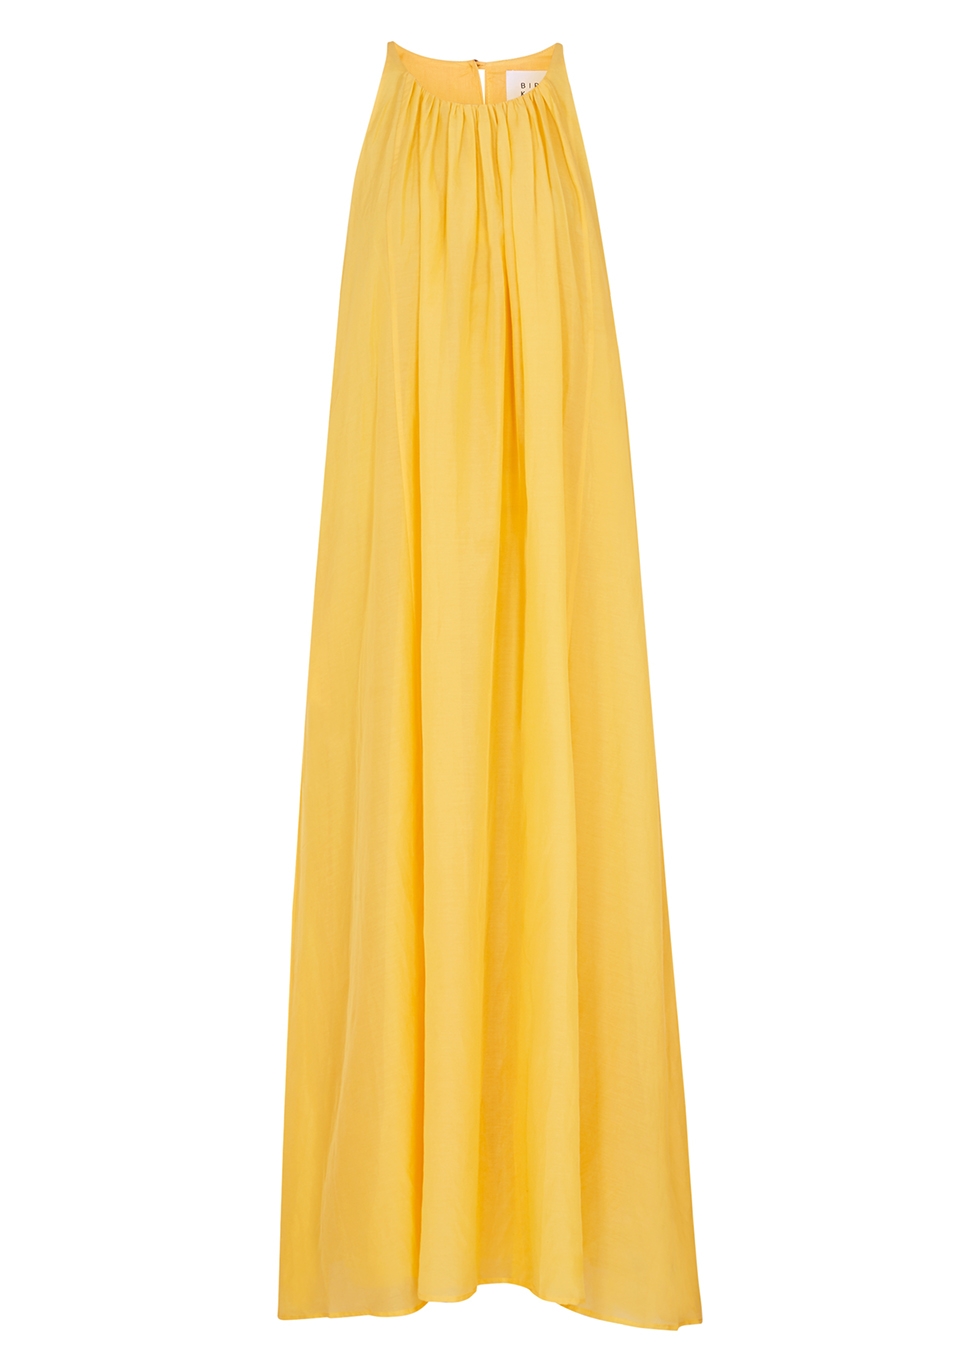 Bird & Knoll Matisse yellow cotton-blend maxi dress - Harvey Nichols